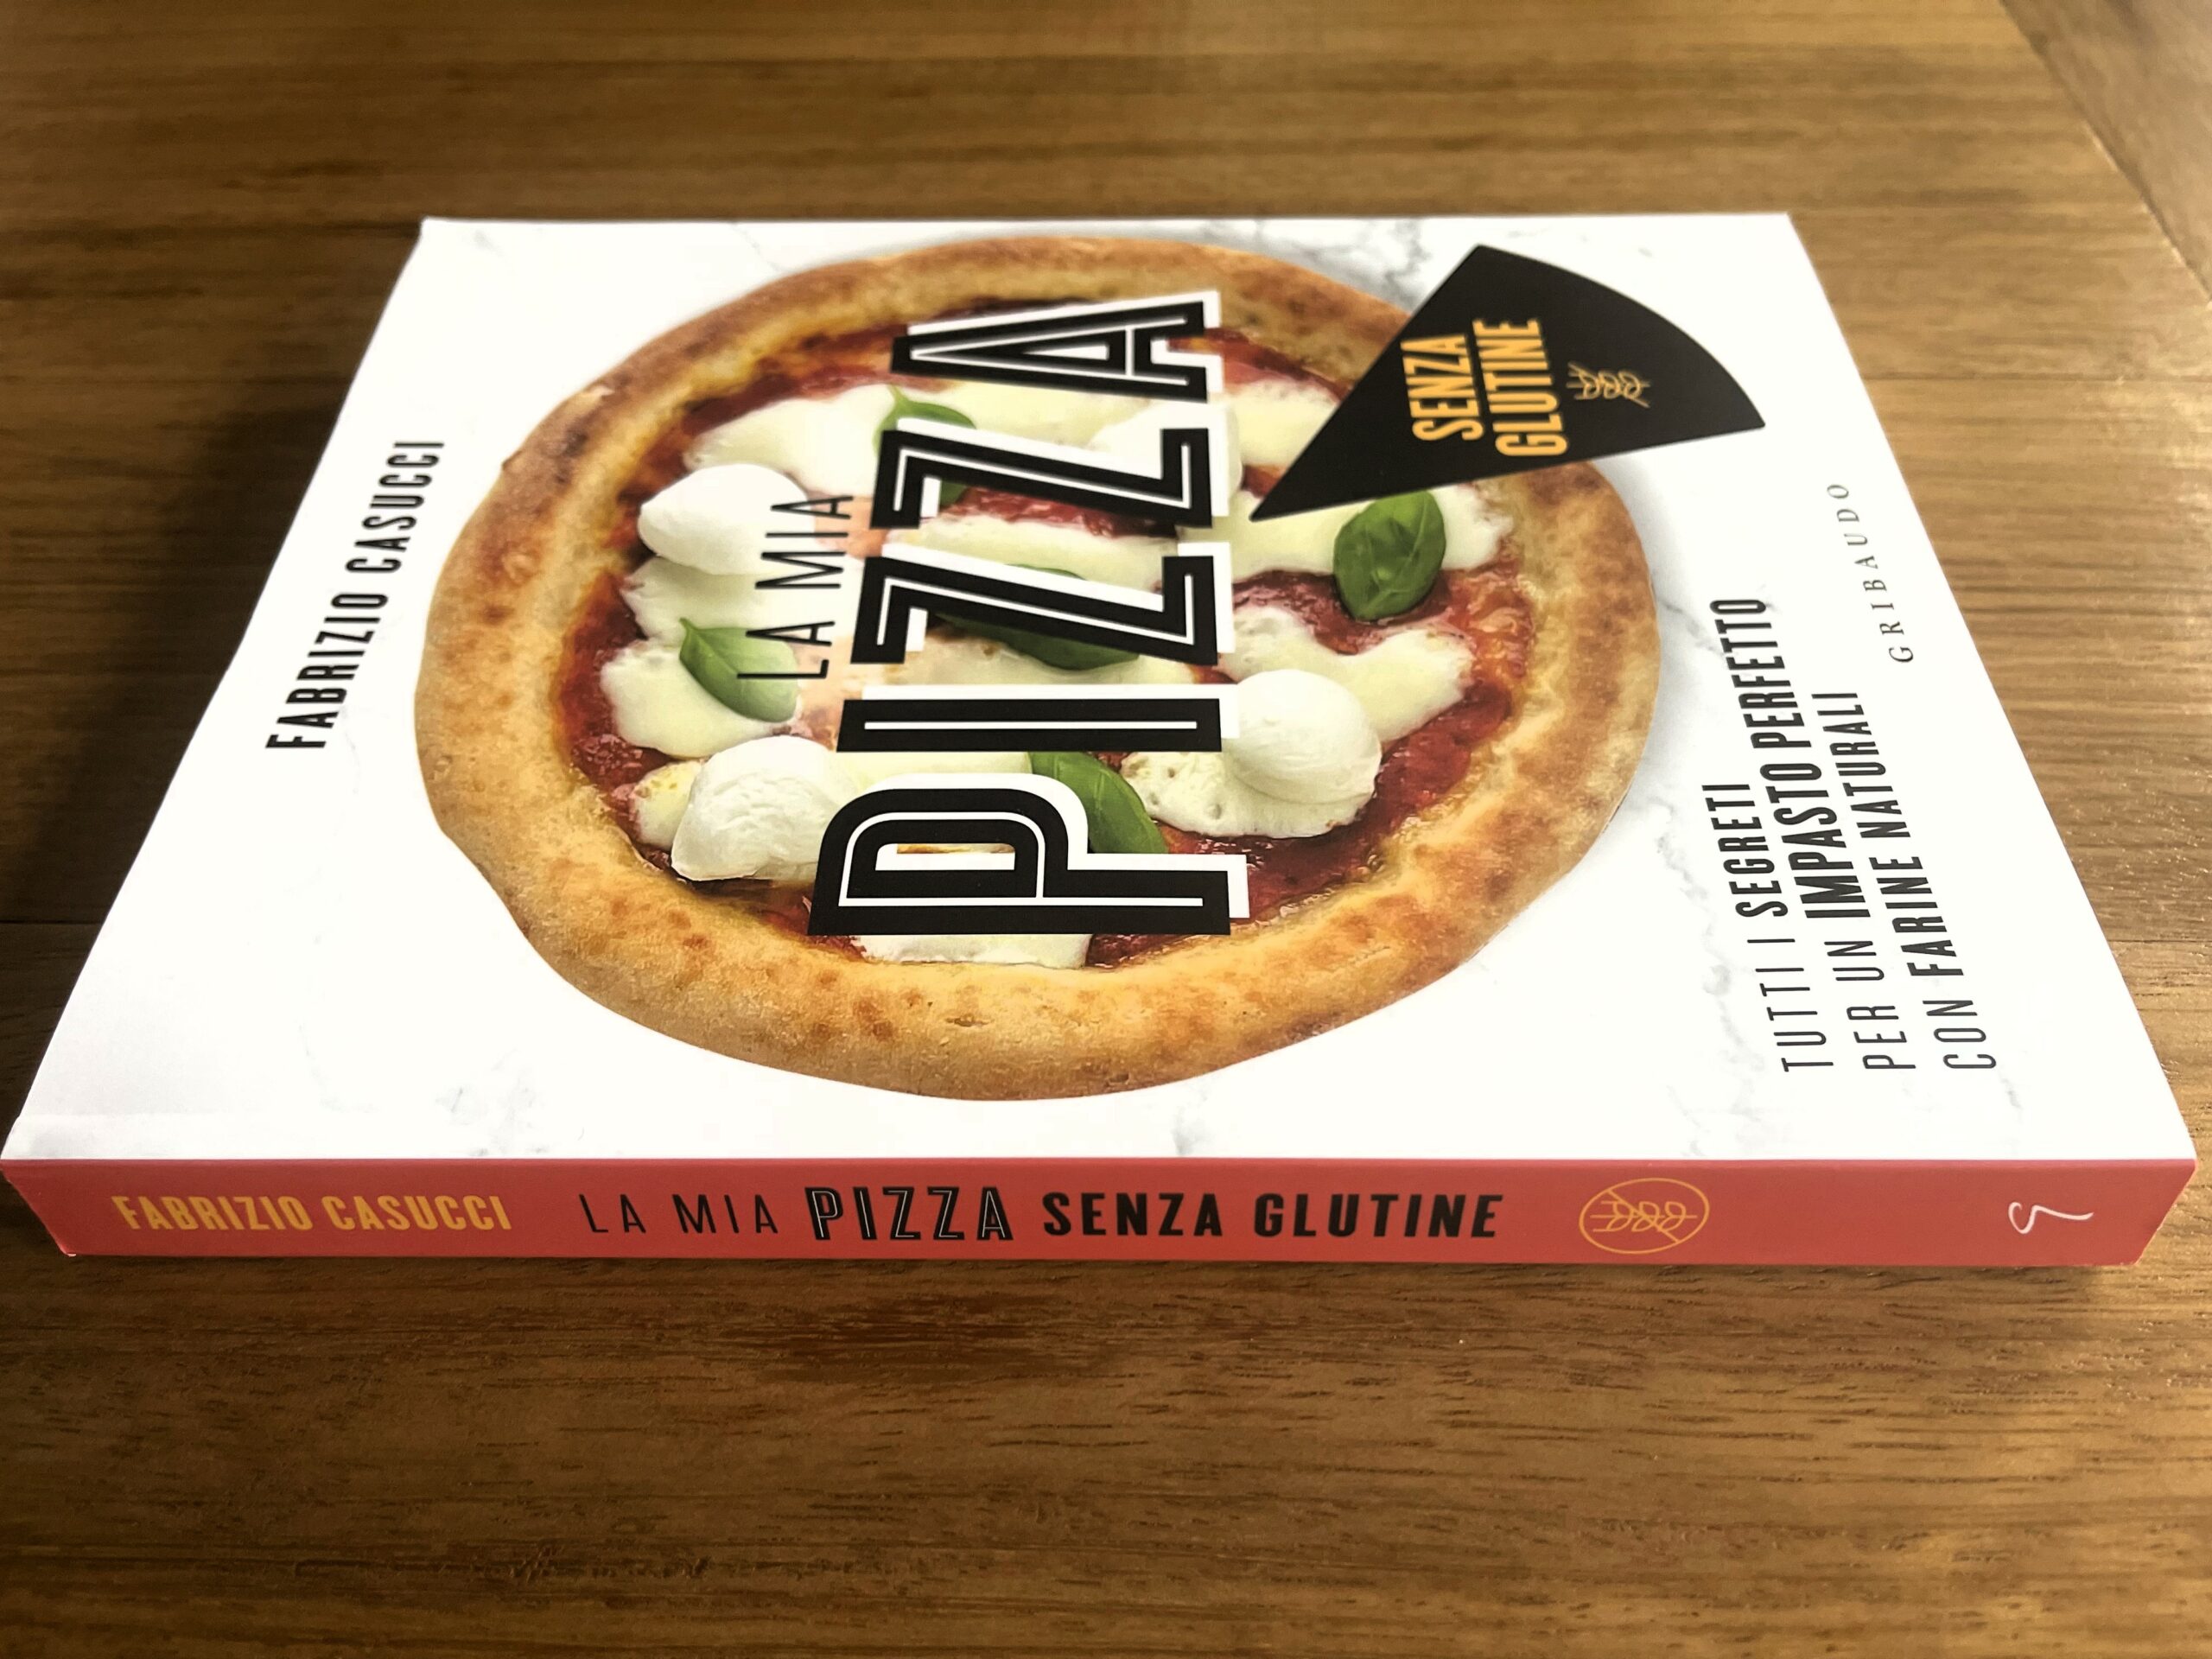 “La mia pizza senza glutine” Fabrizio Casucci svela i segreti del Gluten Free perfetto!